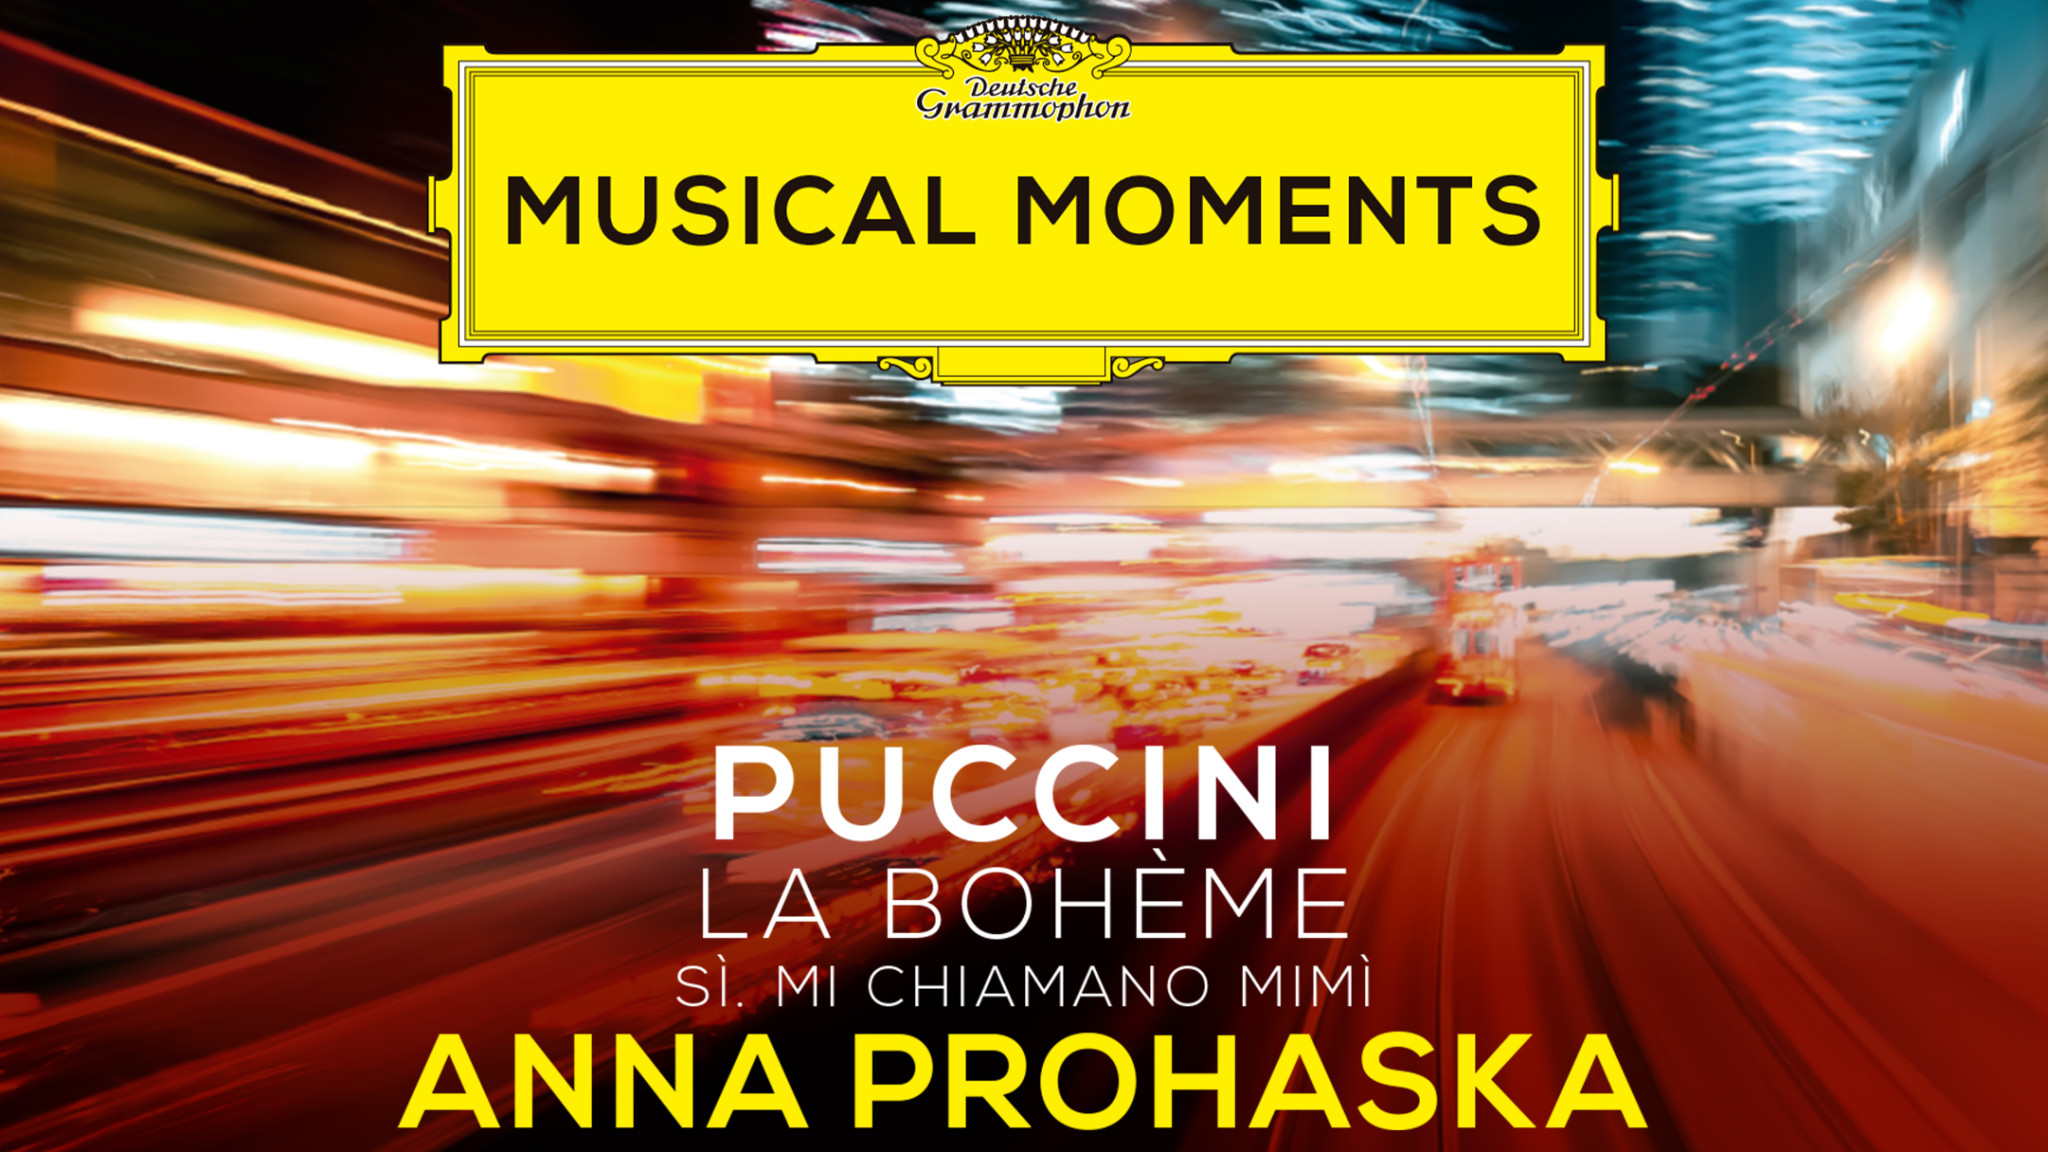 Musical Moments – Anna Prohaska performs Puccini’s Mi chiamano Mimi from La bohème